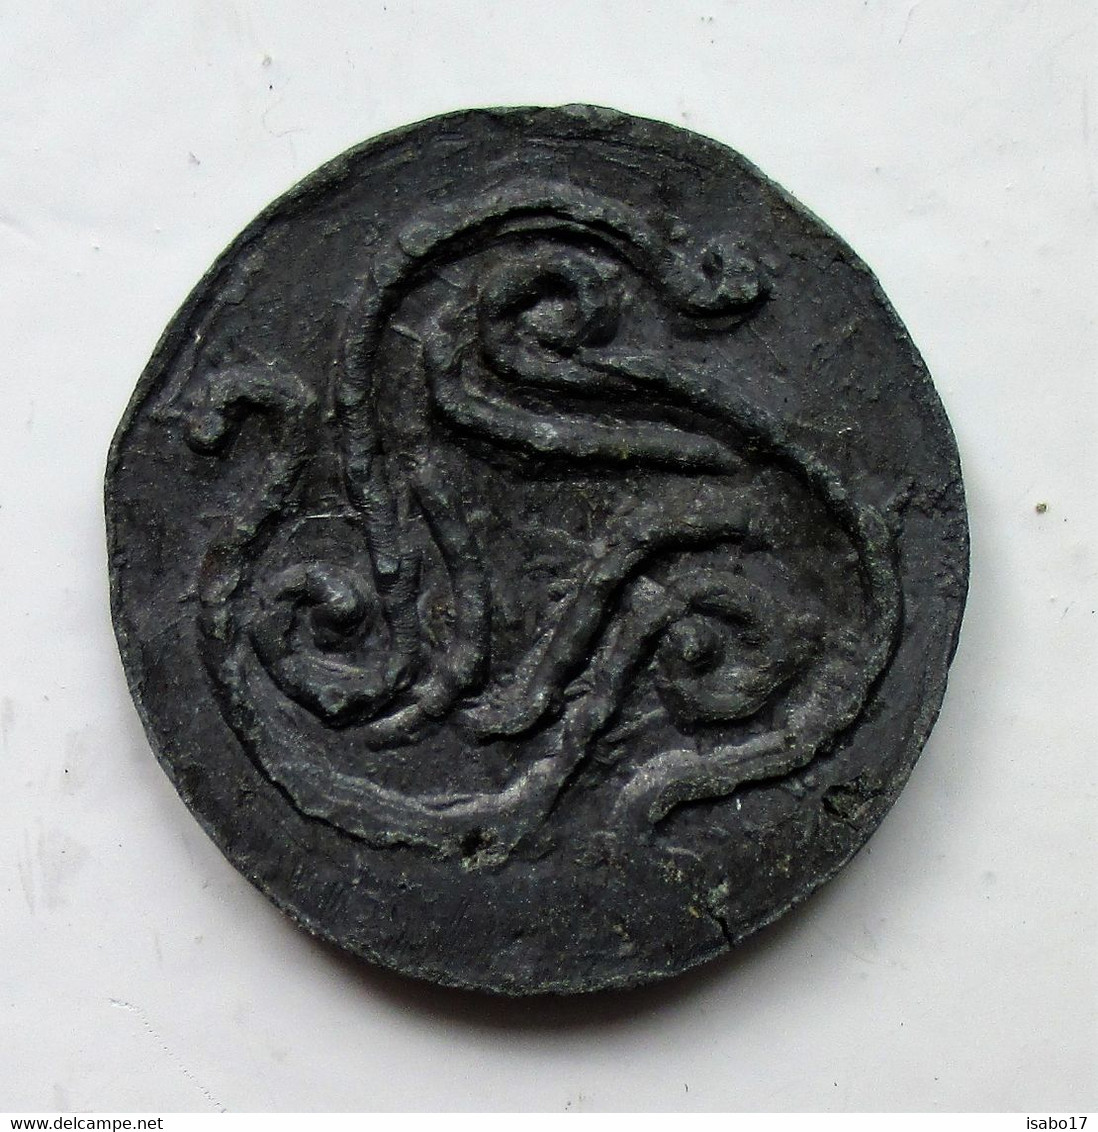 Antike Keltische Münze Mit Triskelezeichen Unbekannt - Herkunft Unbekannt